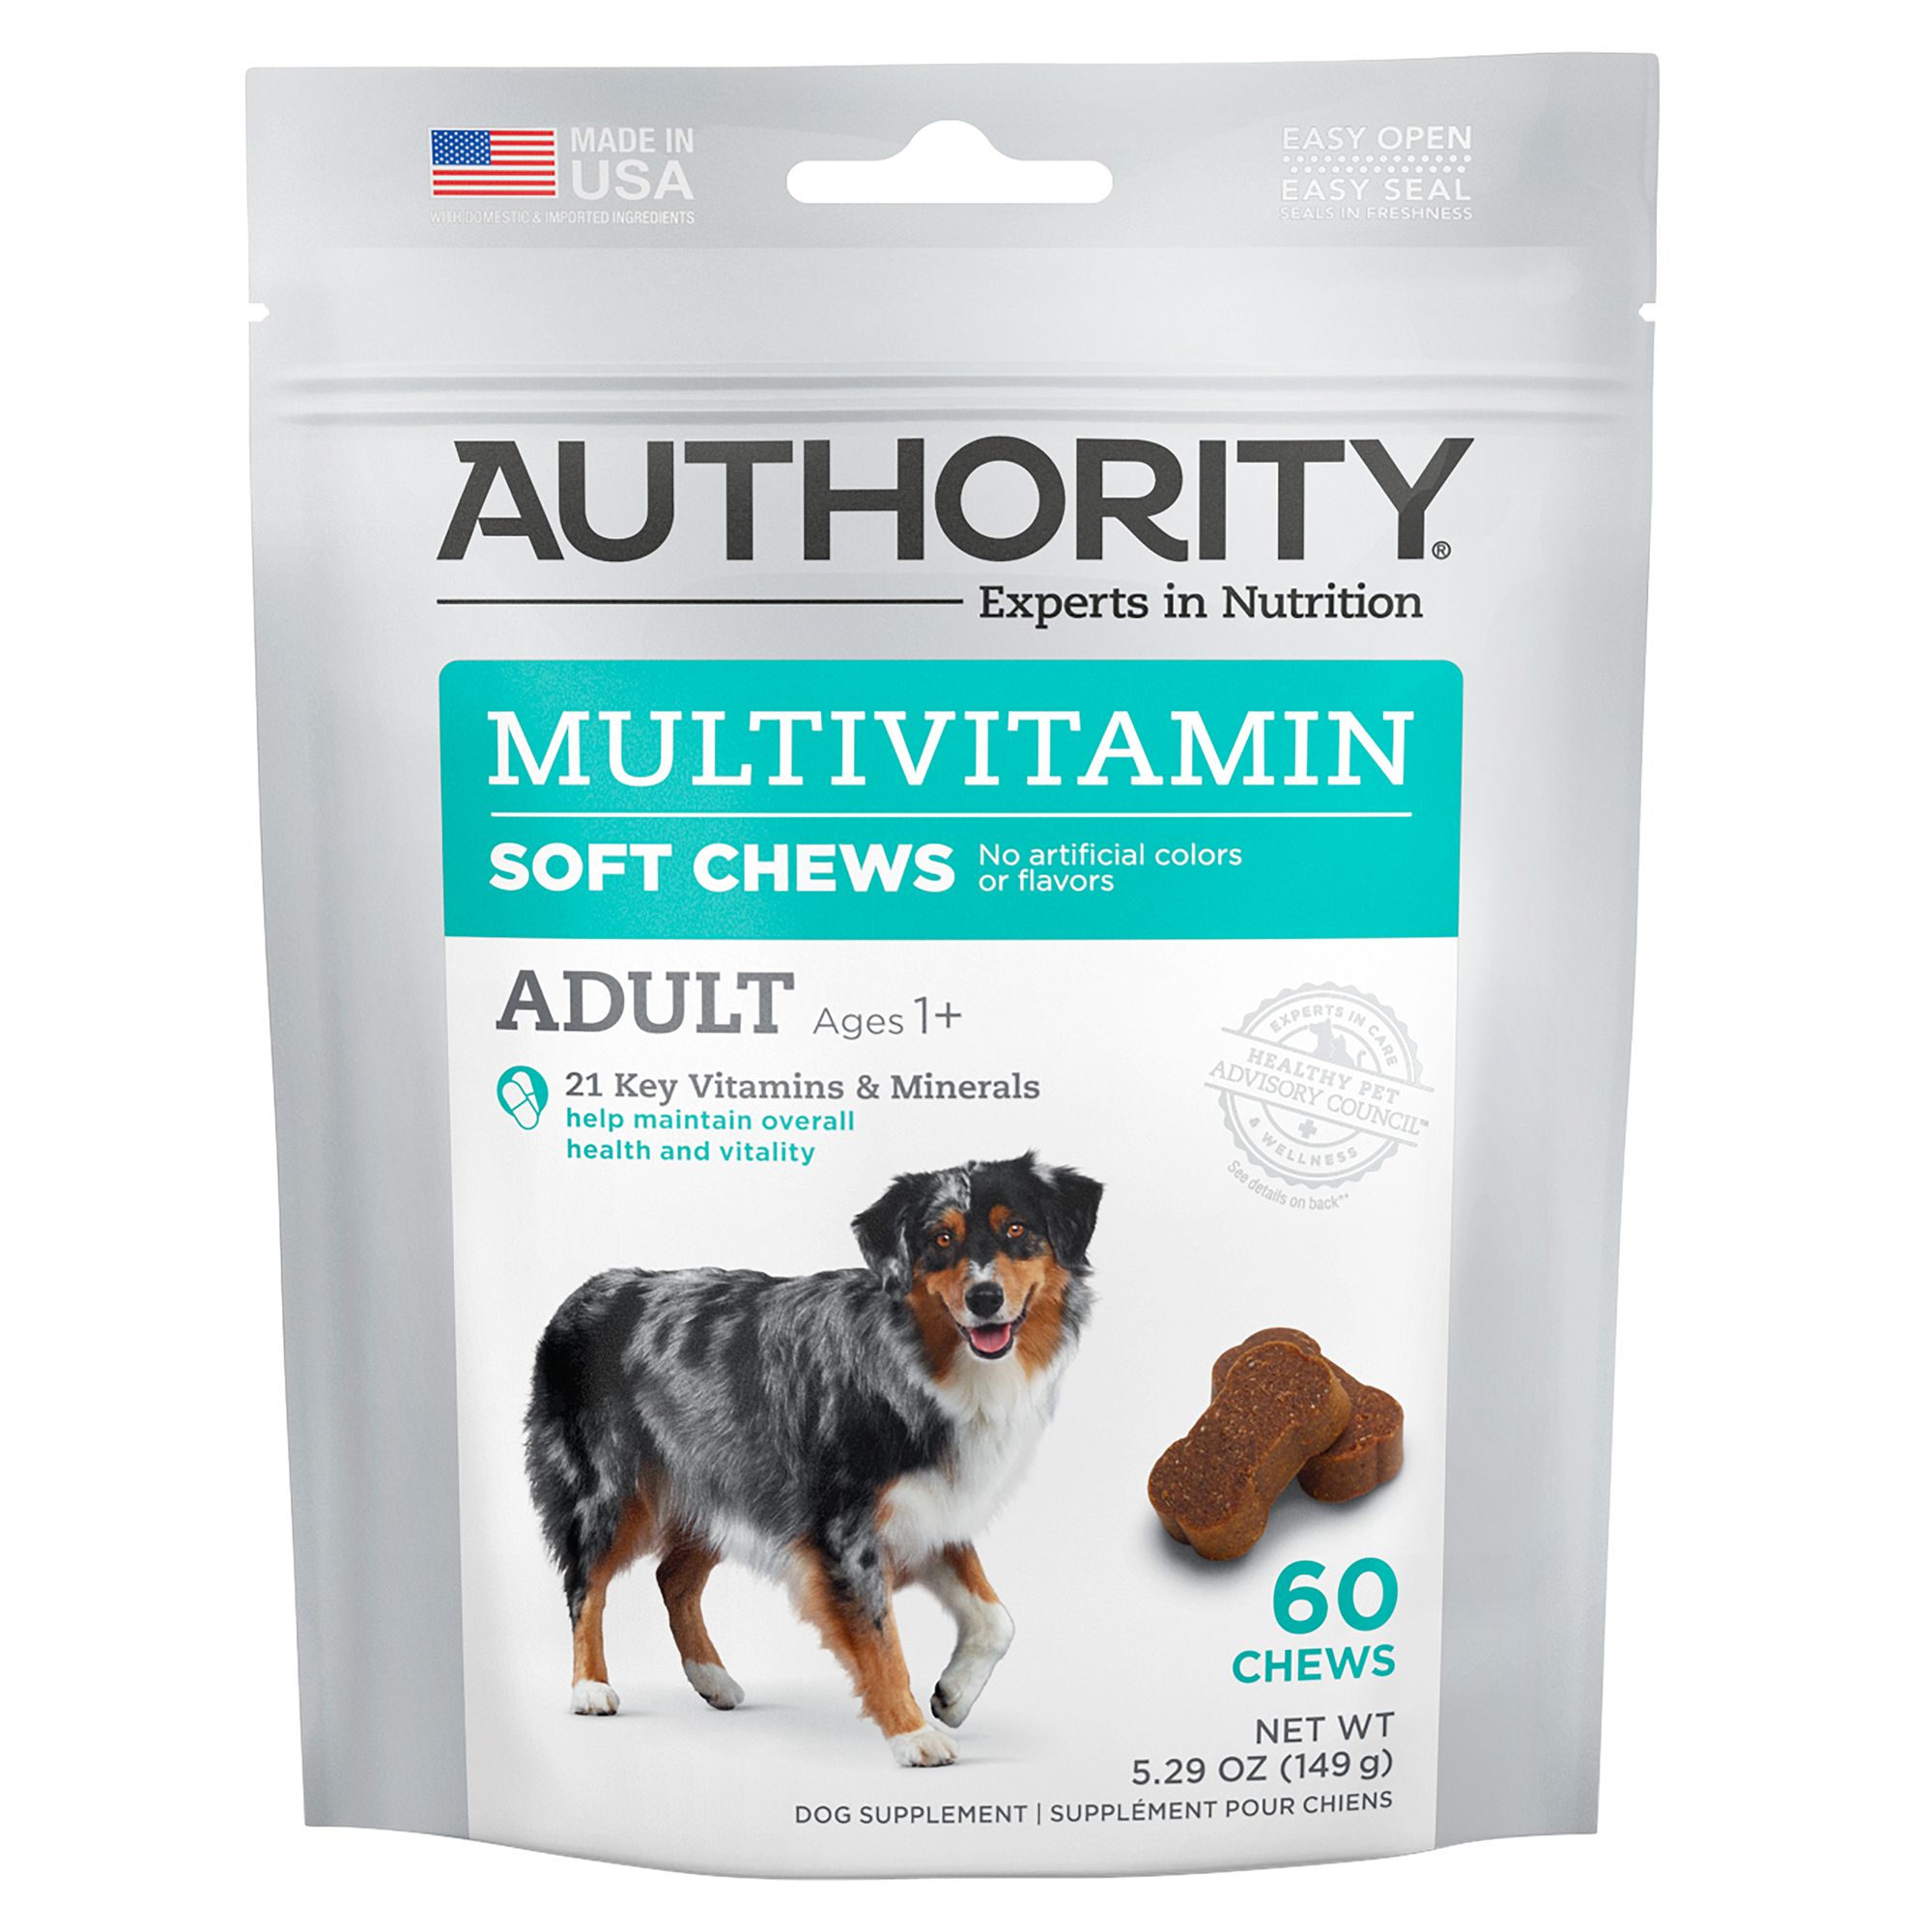 adult dog vitamins